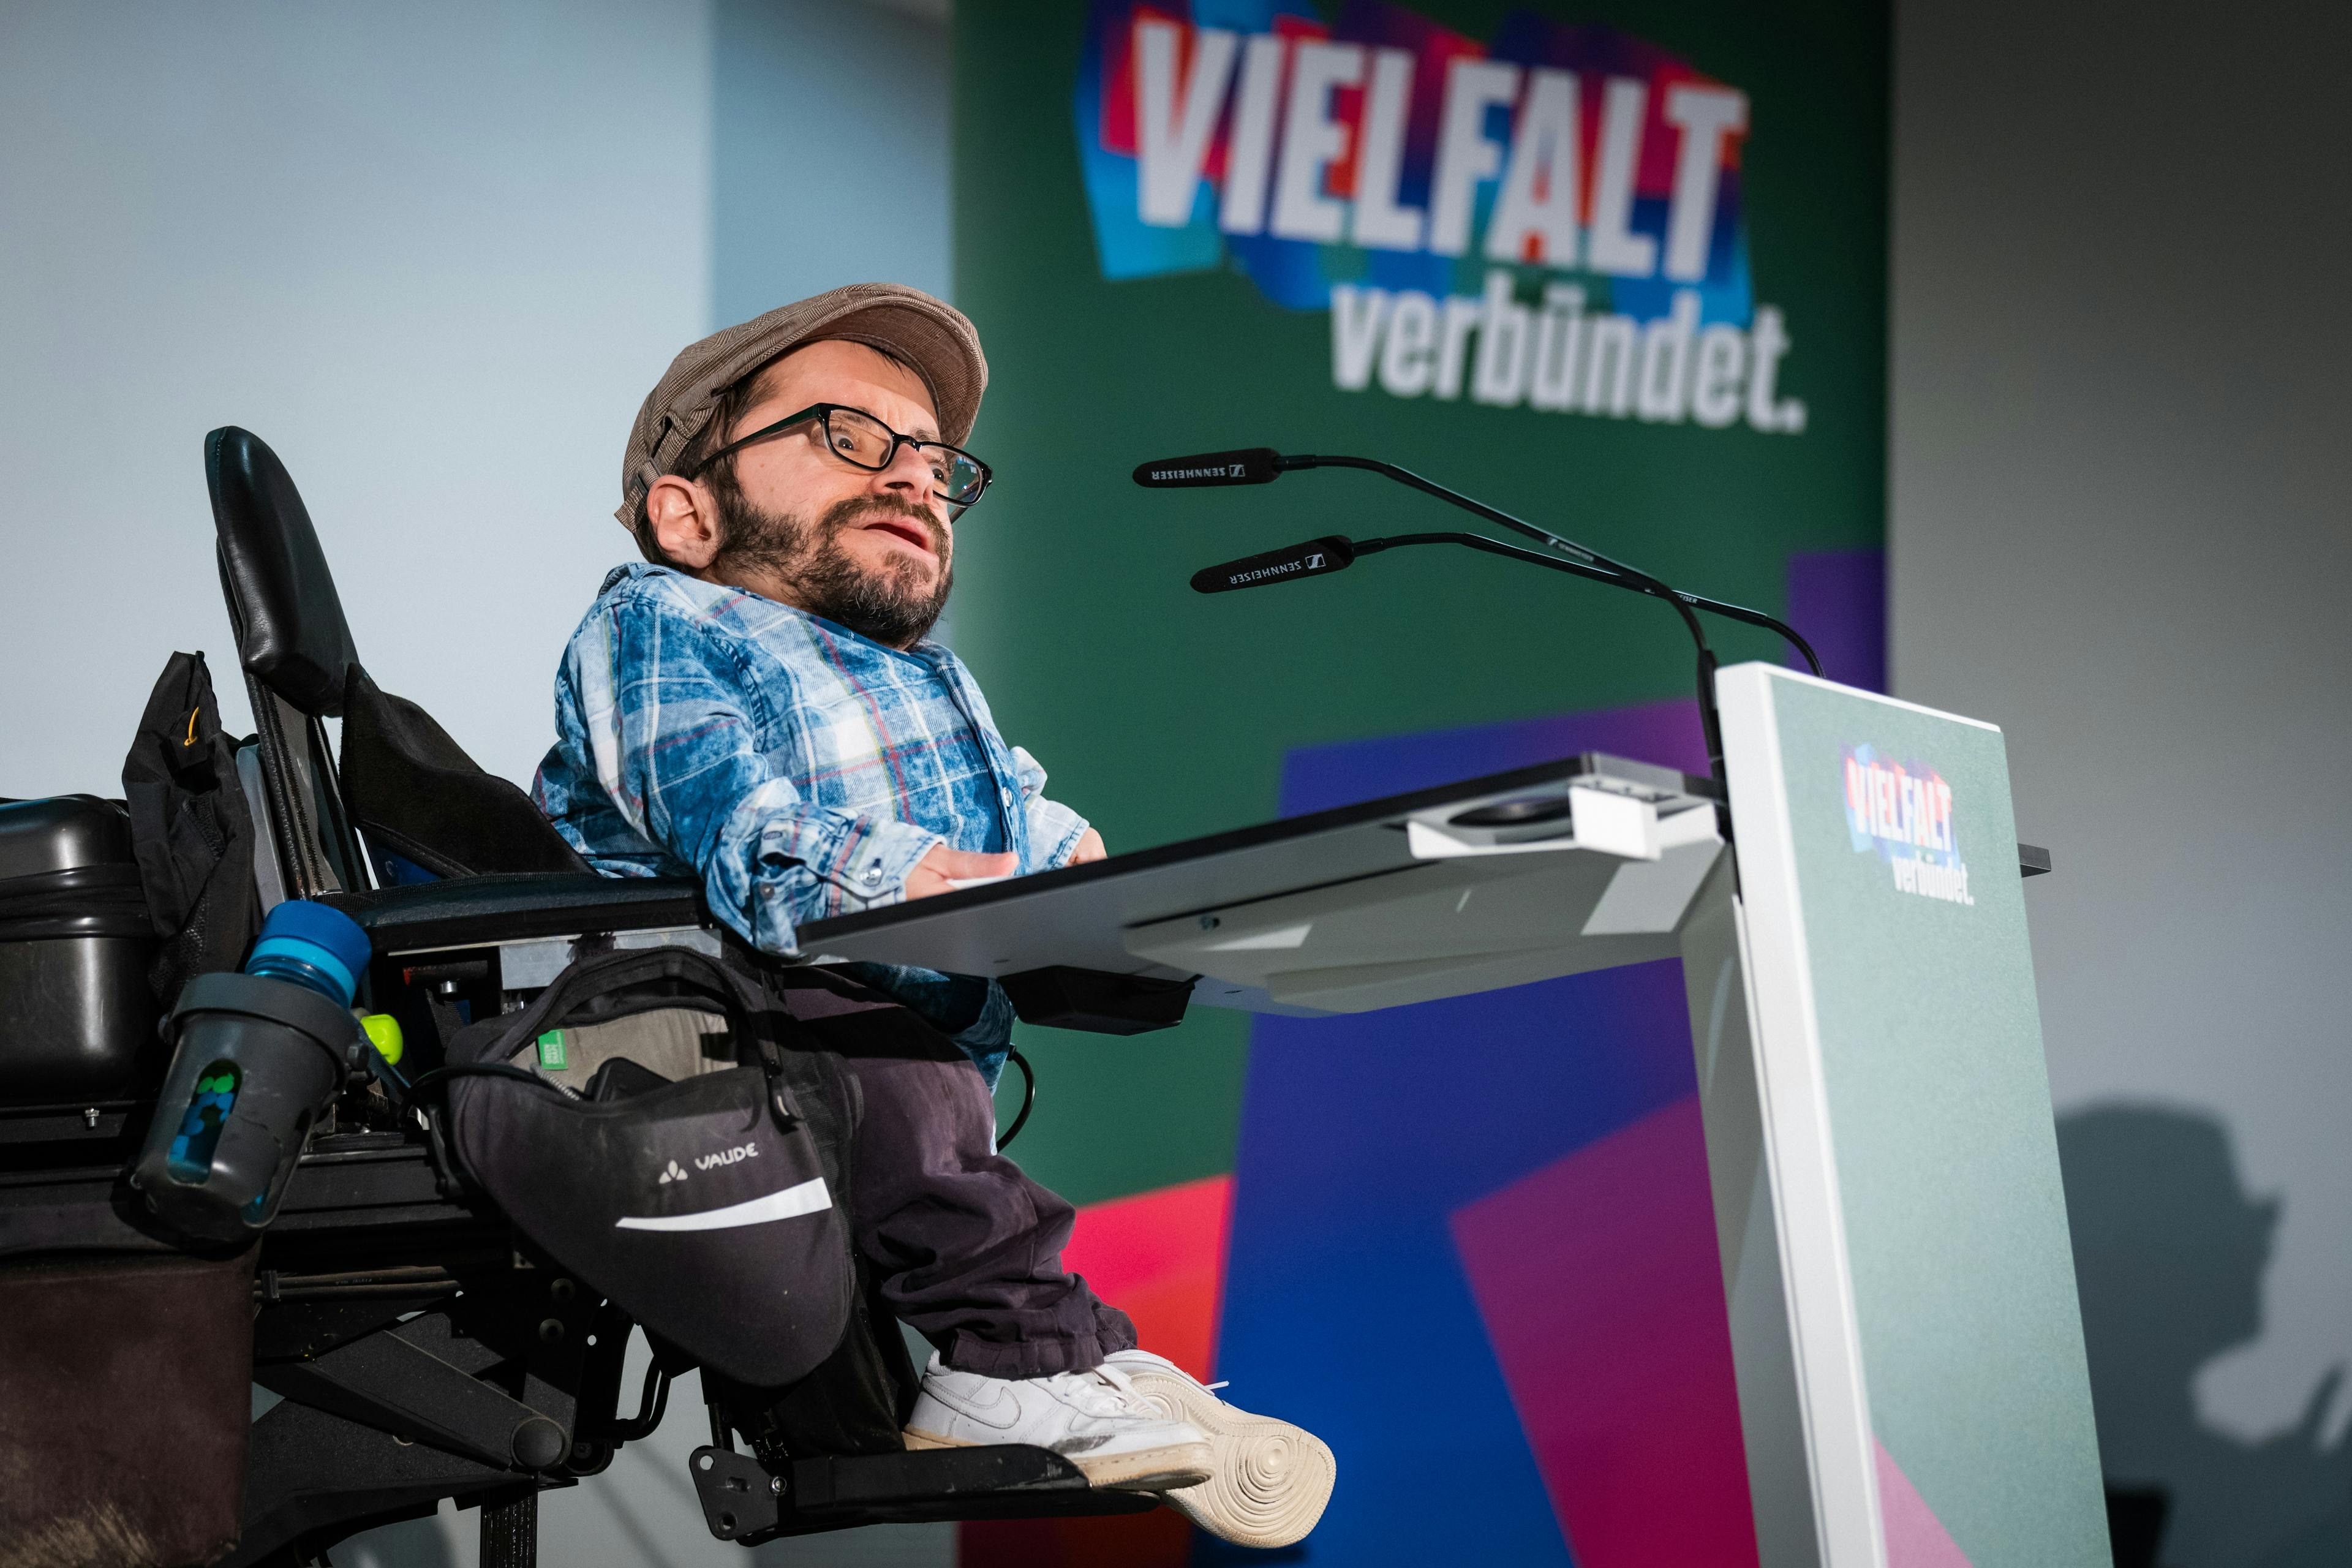 Ein Mann im Rollstuhl trägt eine Kappe und spricht an einem Rednerpult in ein Mikrofon. Im Hintergrund befindet sich ein buntes Banner.